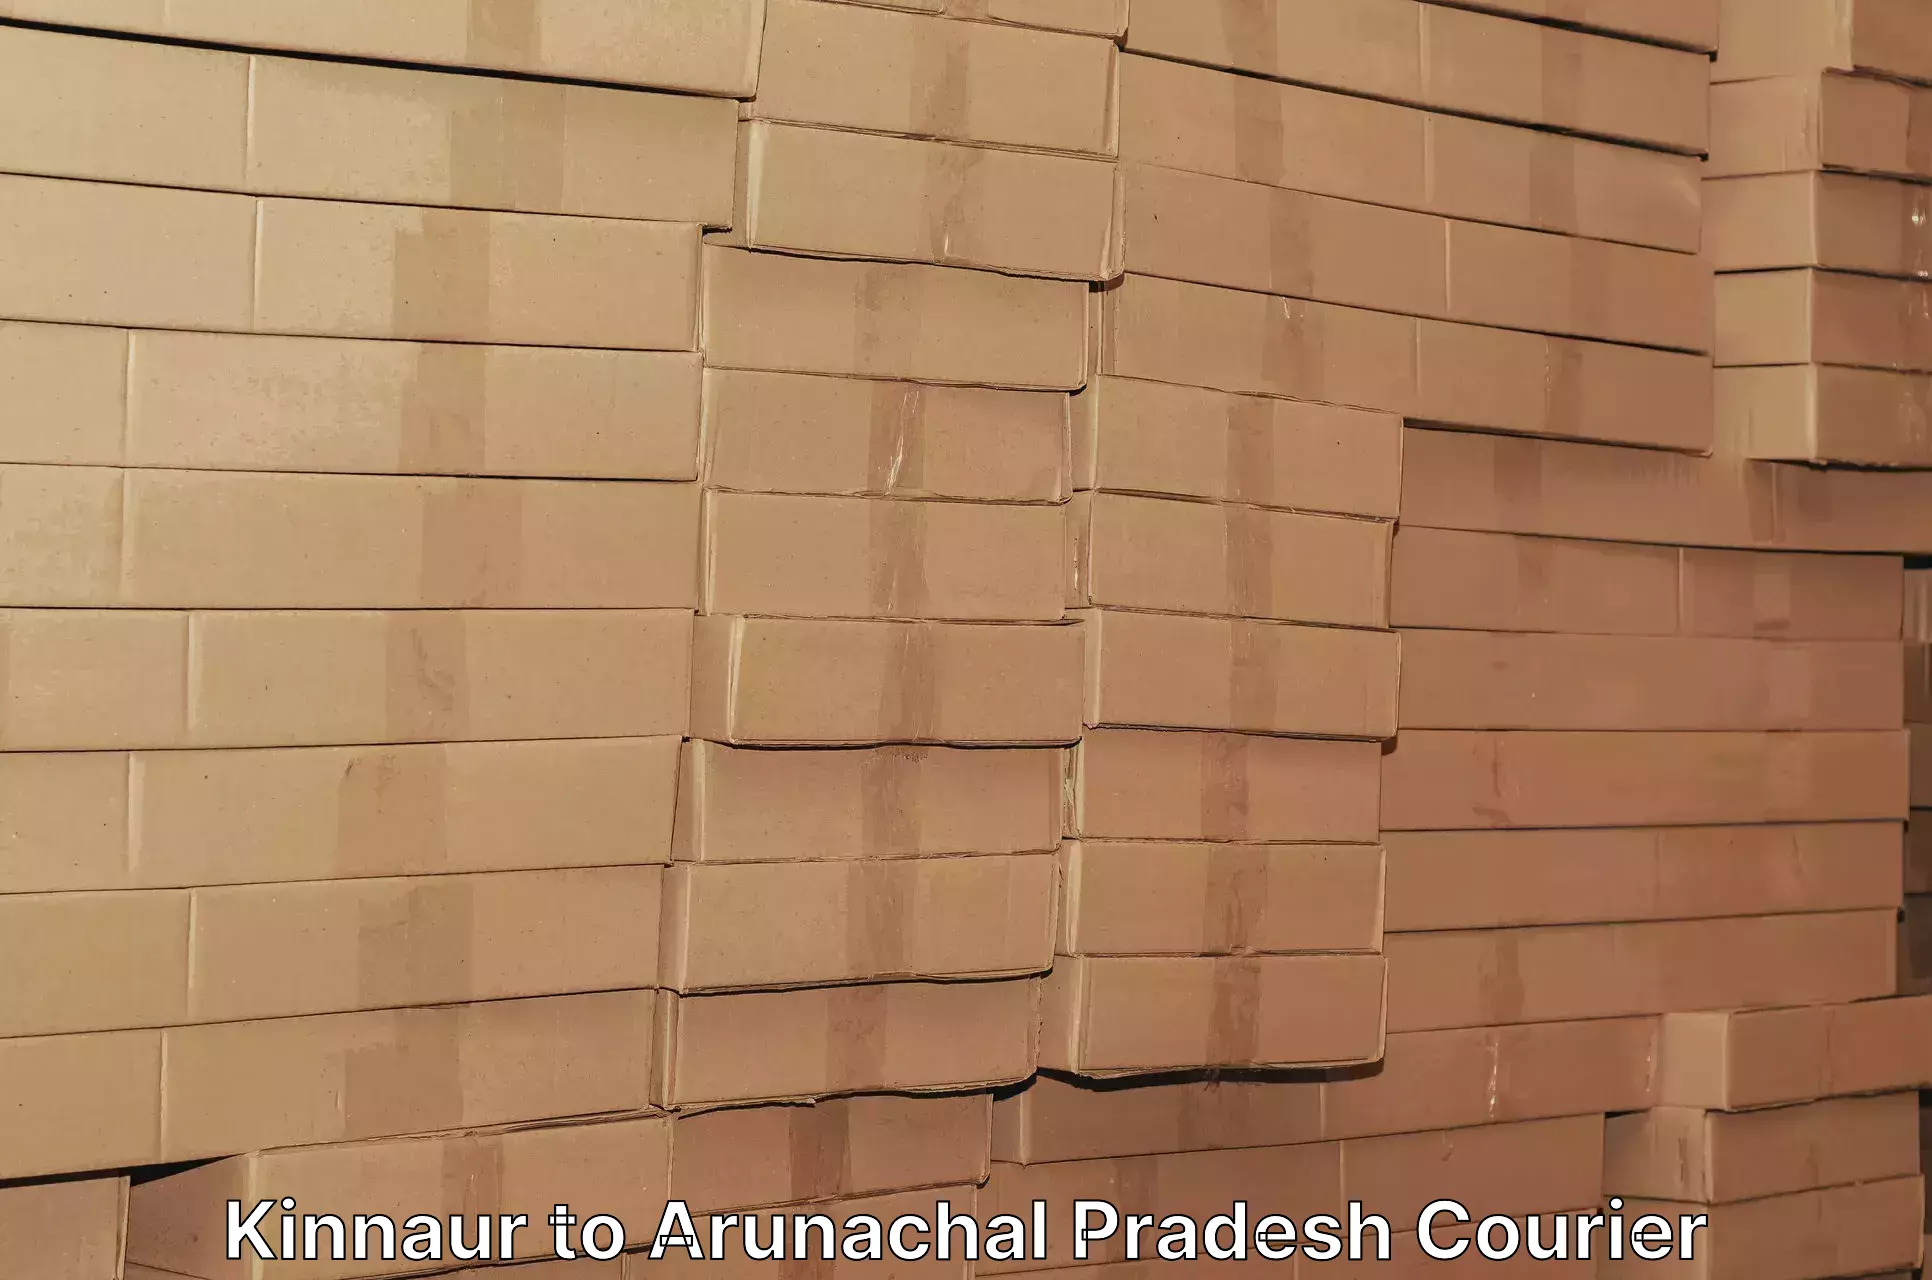 Cost-effective freight solutions Kinnaur to Arunachal Pradesh